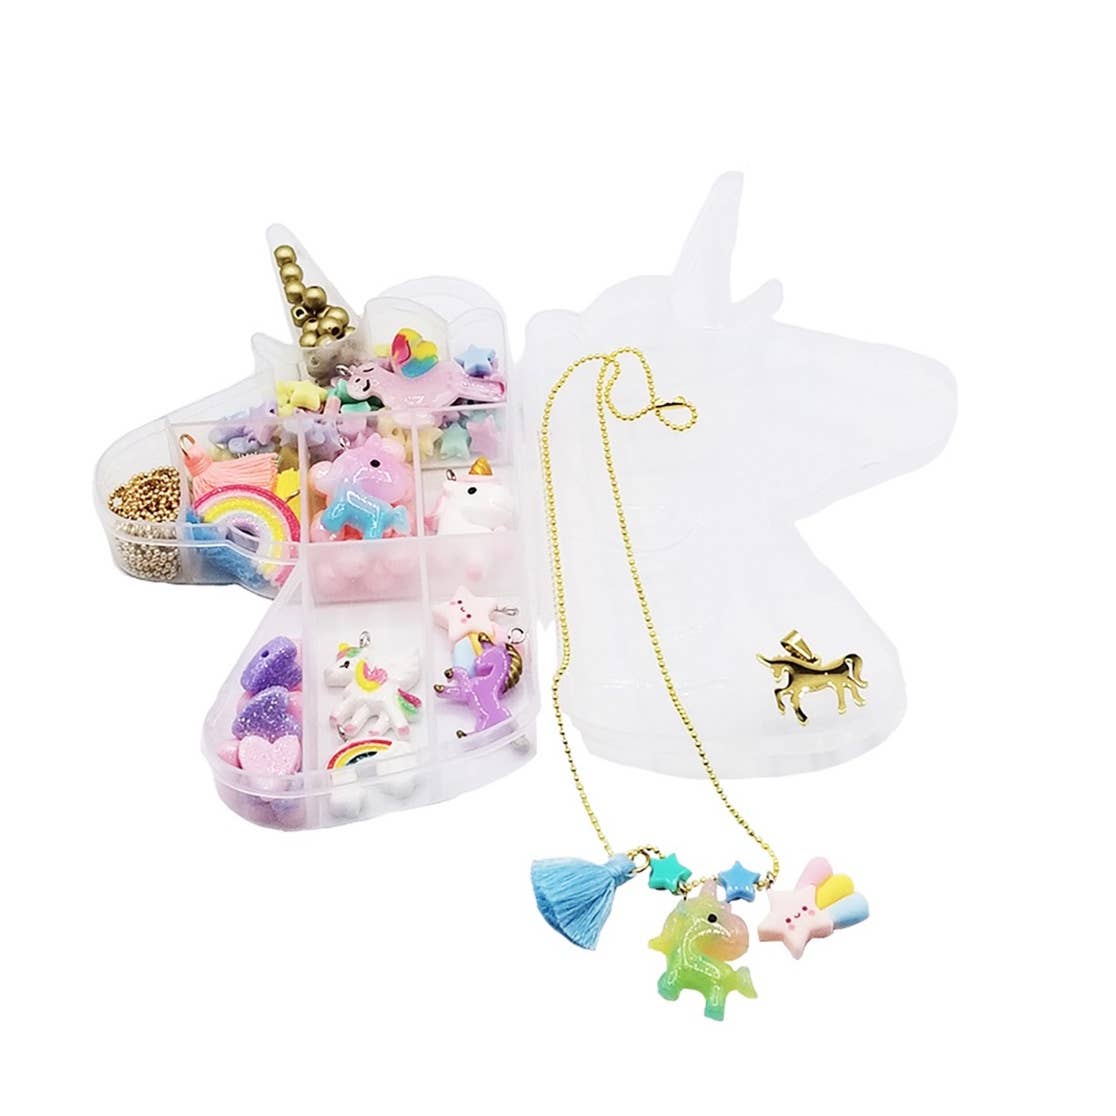 Unicorn Jewelry Charm DIY Kit